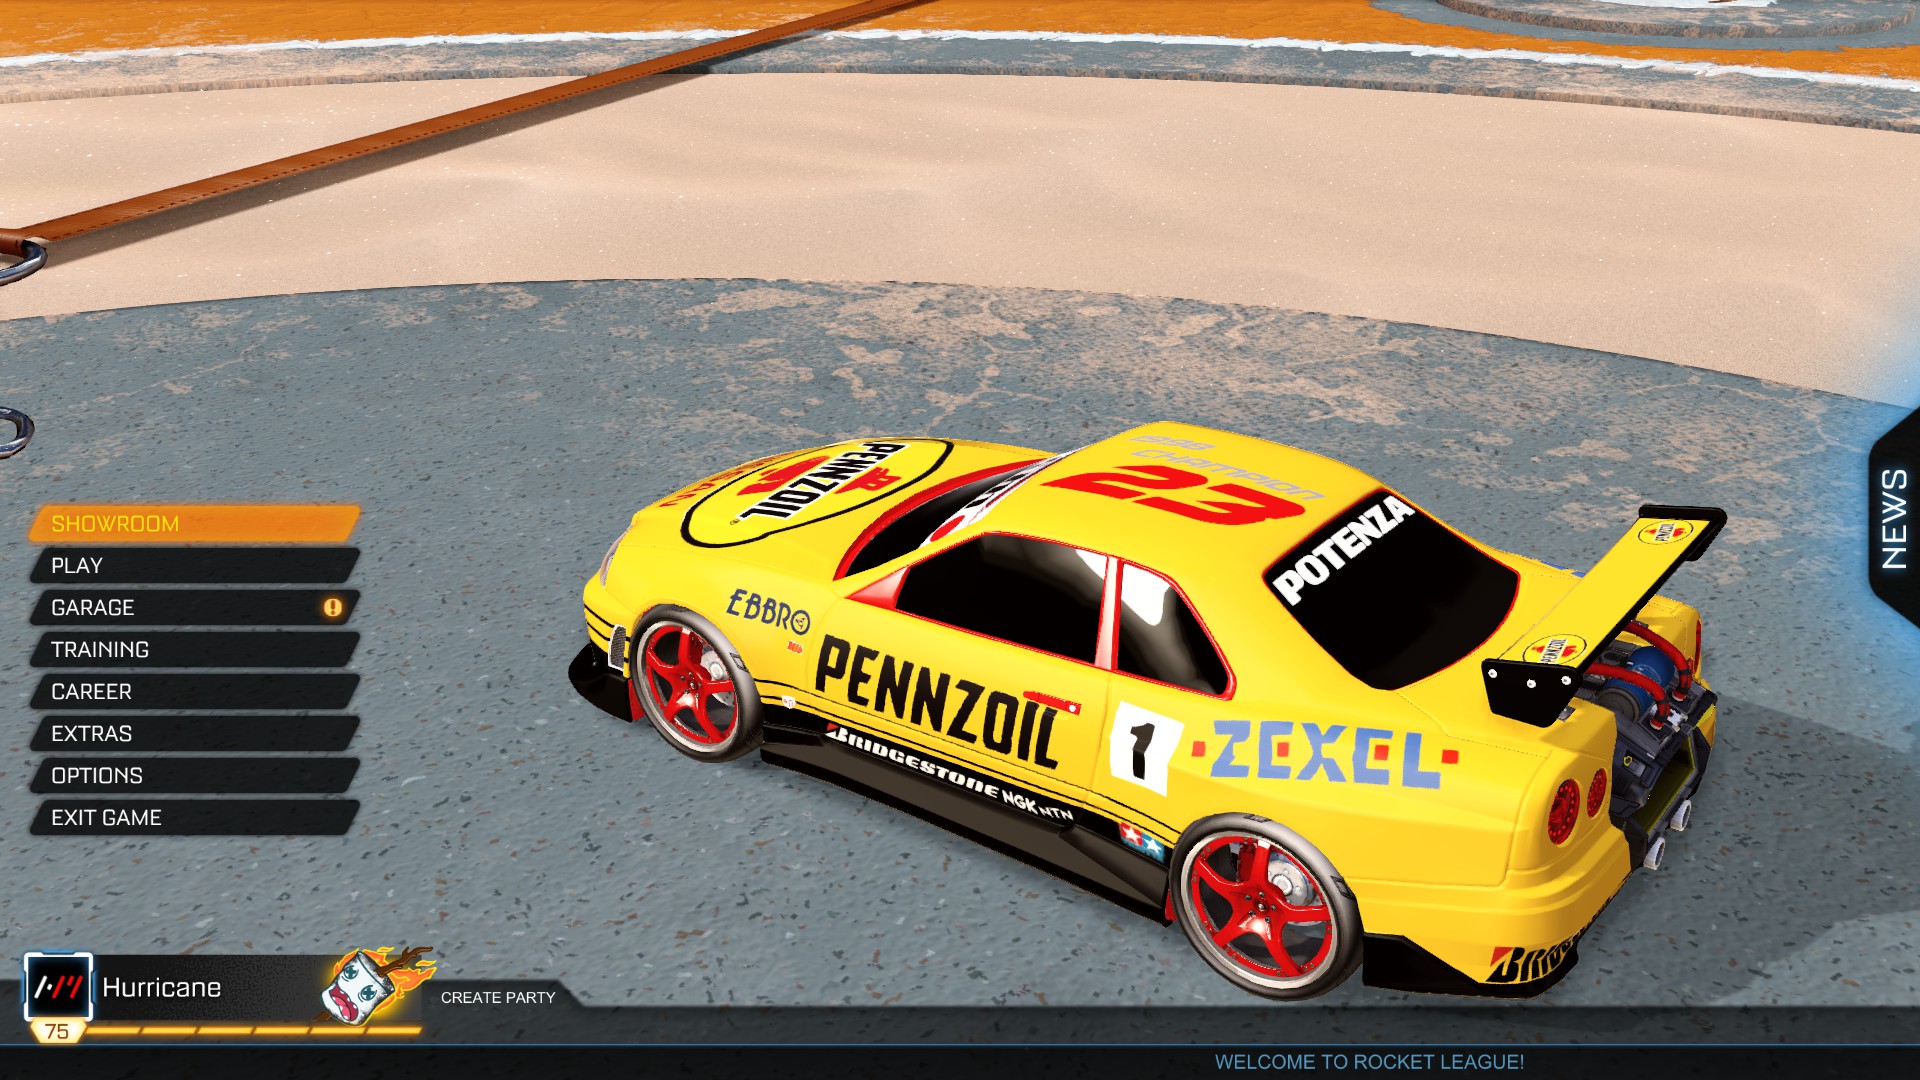 Pennzoil Skyline racing decal